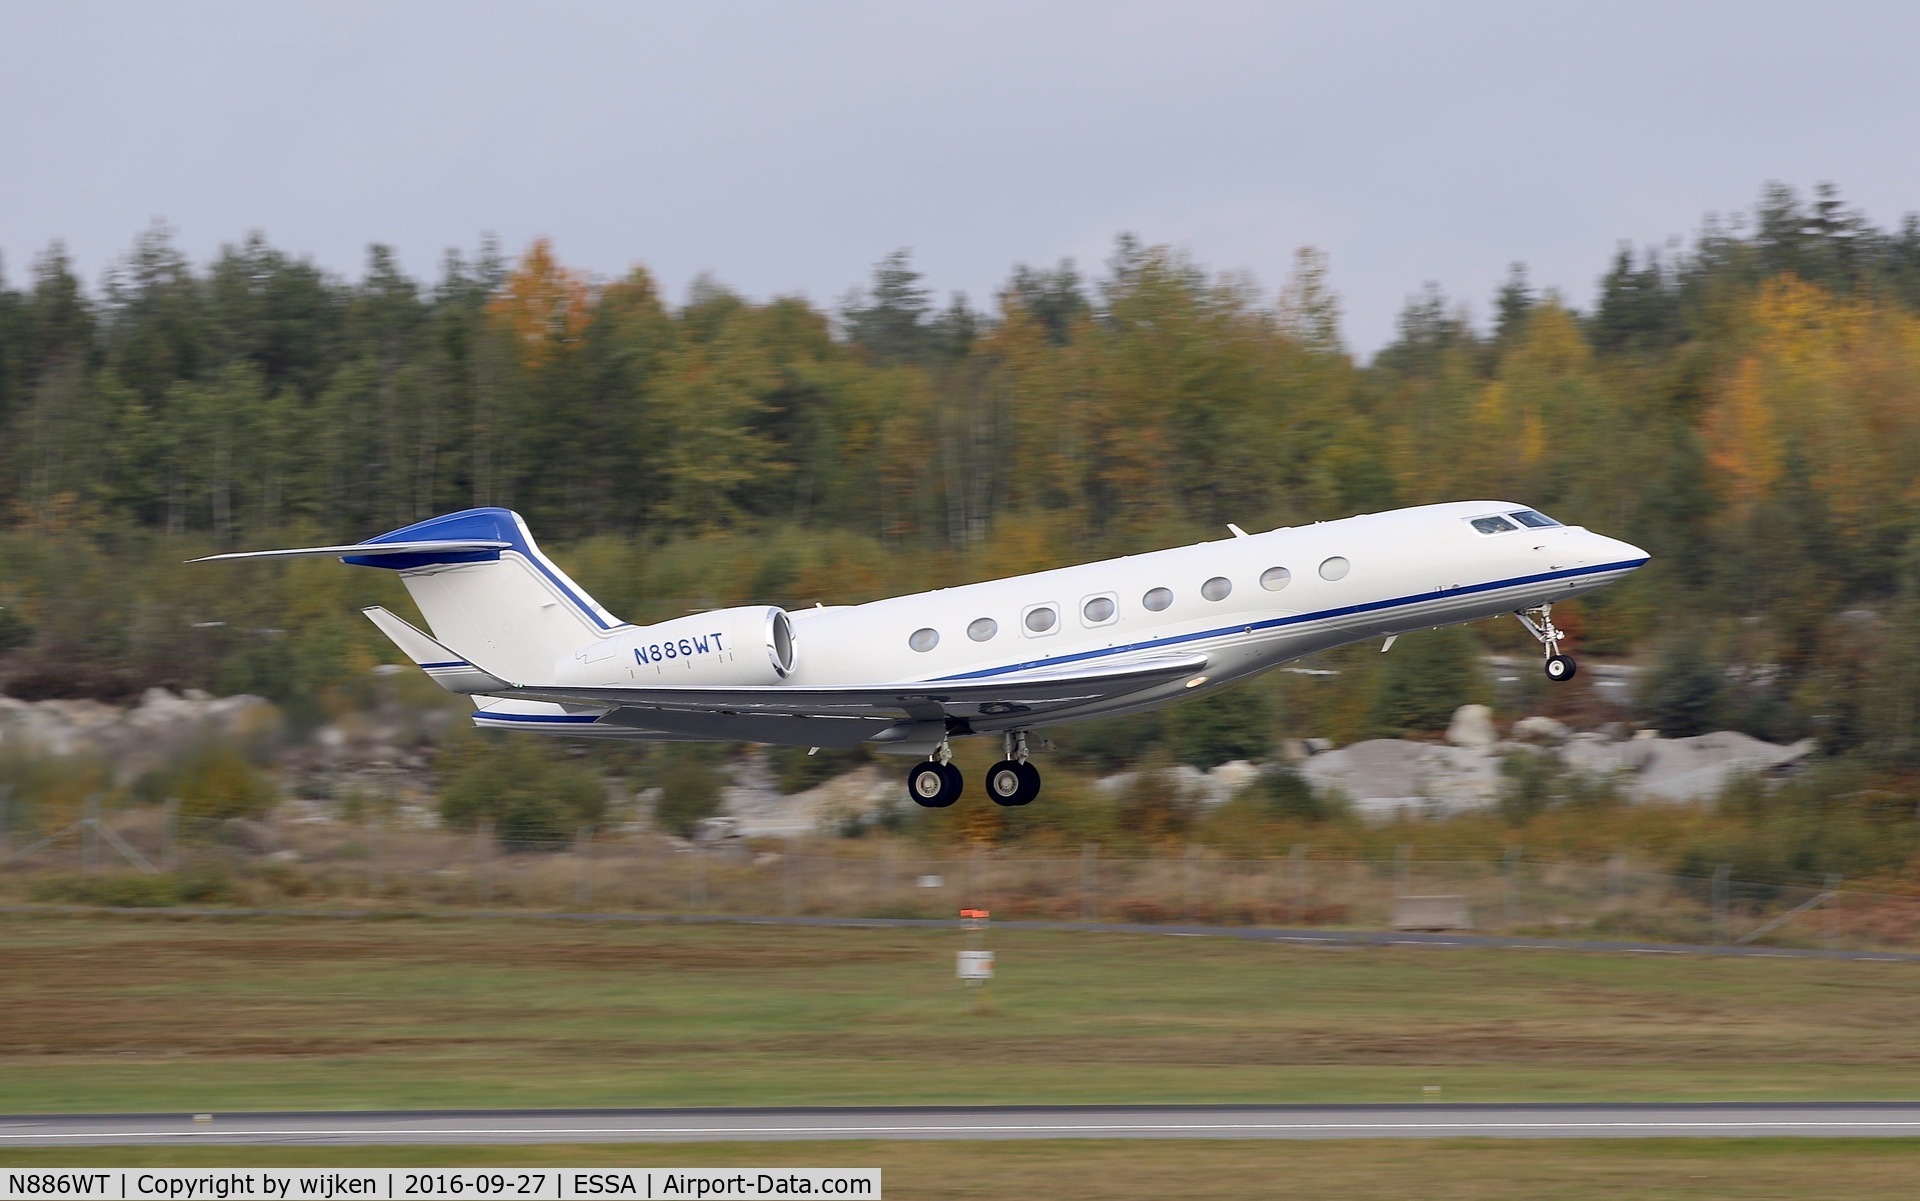 N886WT, 2012 Gulfstream Aerospace G650 (G-VI) C/N 6017, RWY 08